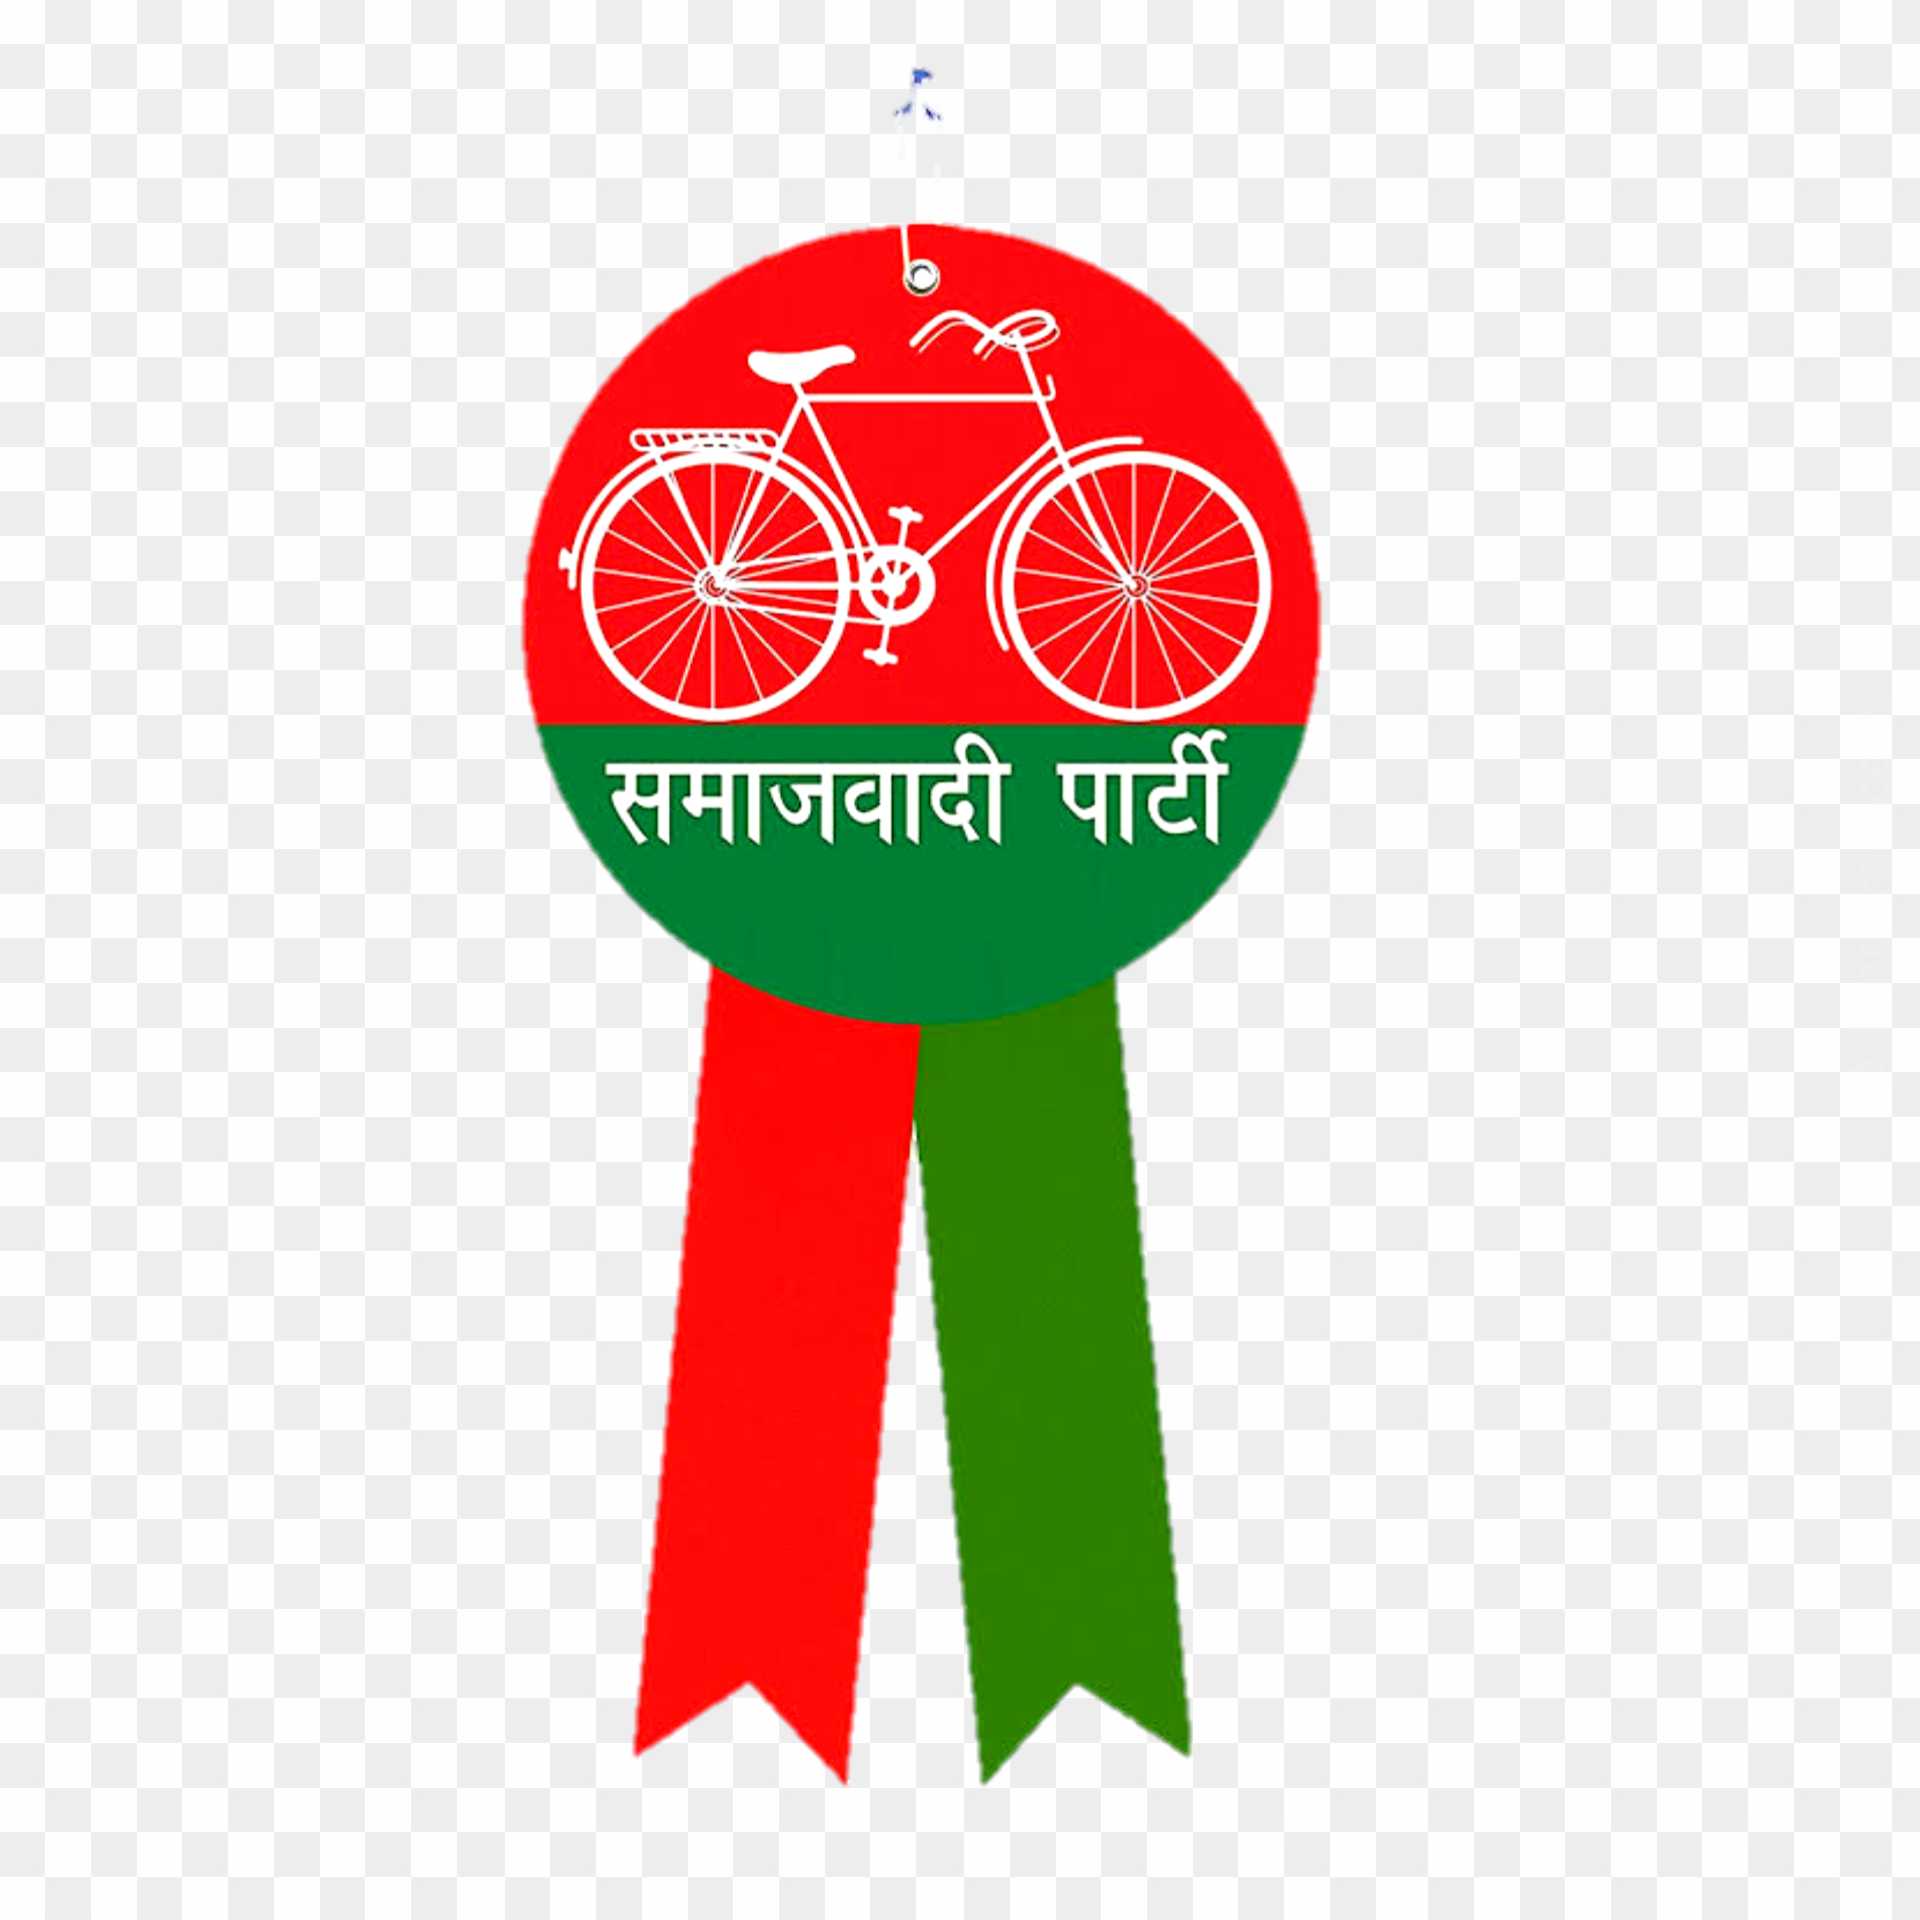 Samajwadi party logo PNG images